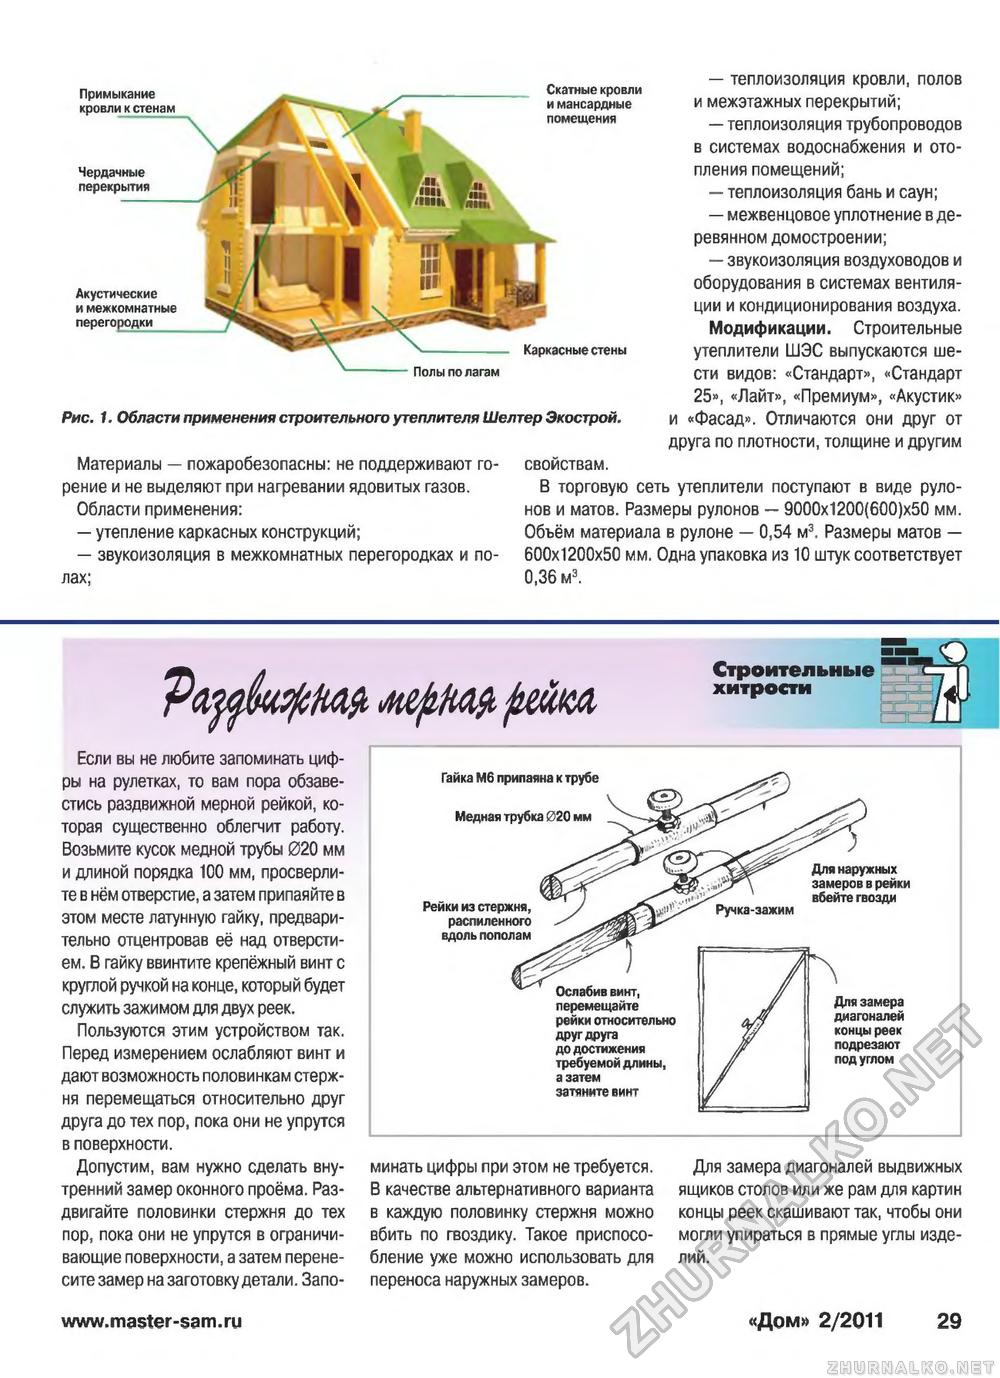 Дом 2011-02, страница 29